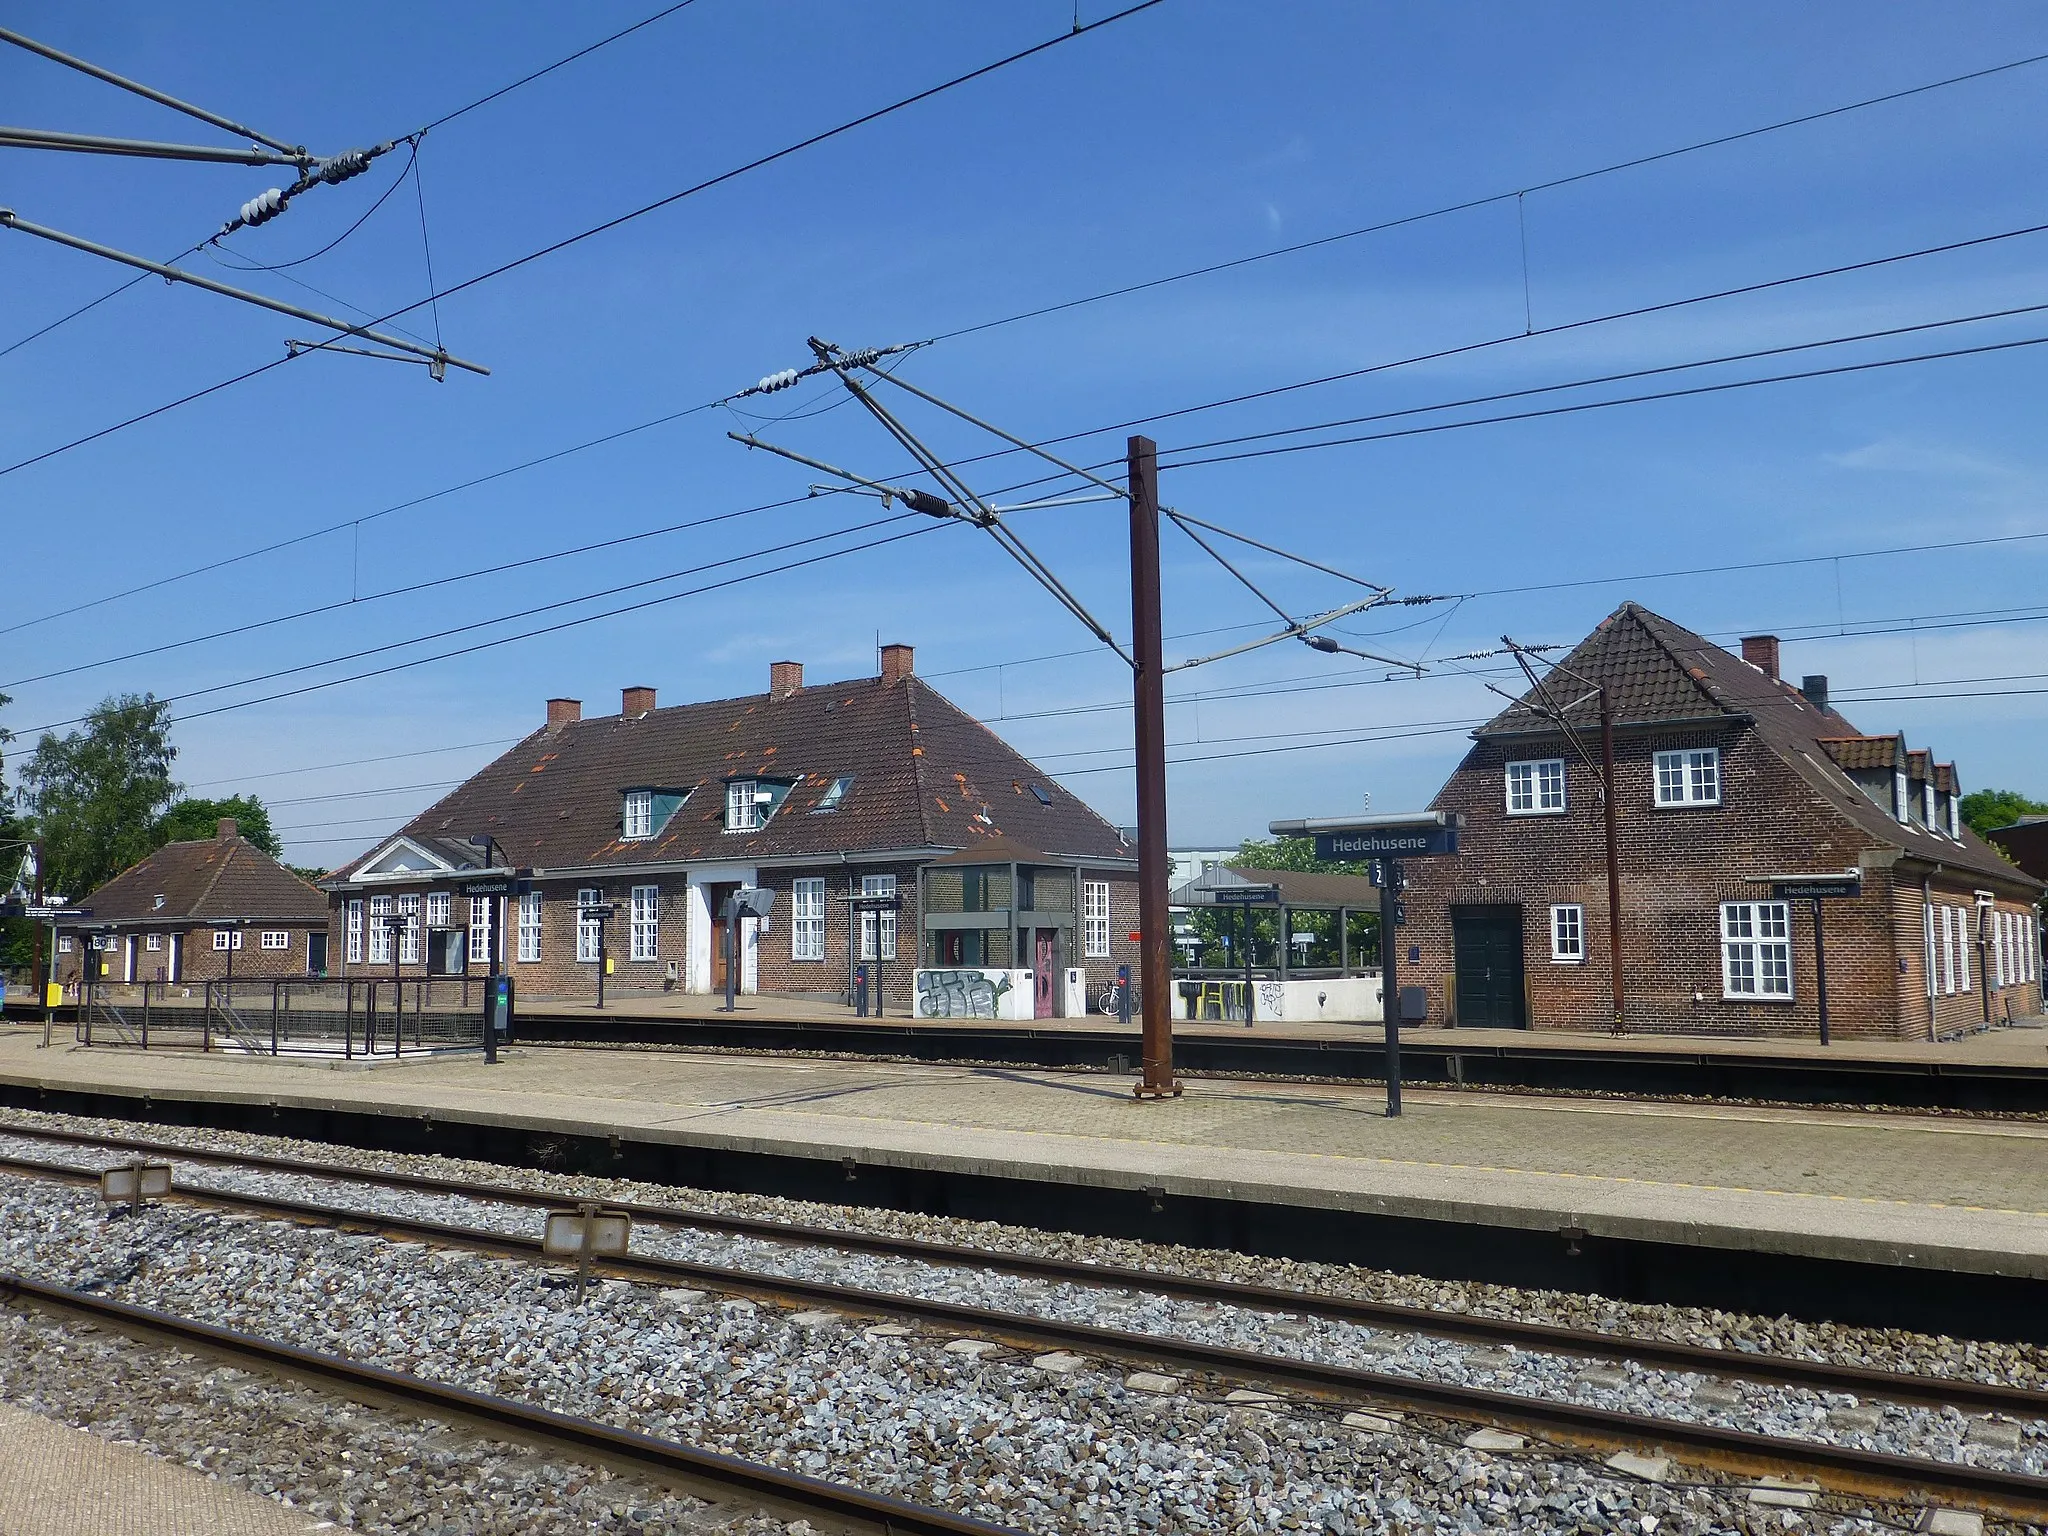 Photo showing: Hedehusene Station on the railway line Vestbanen between Copenhagen and Korsør in Denmark.